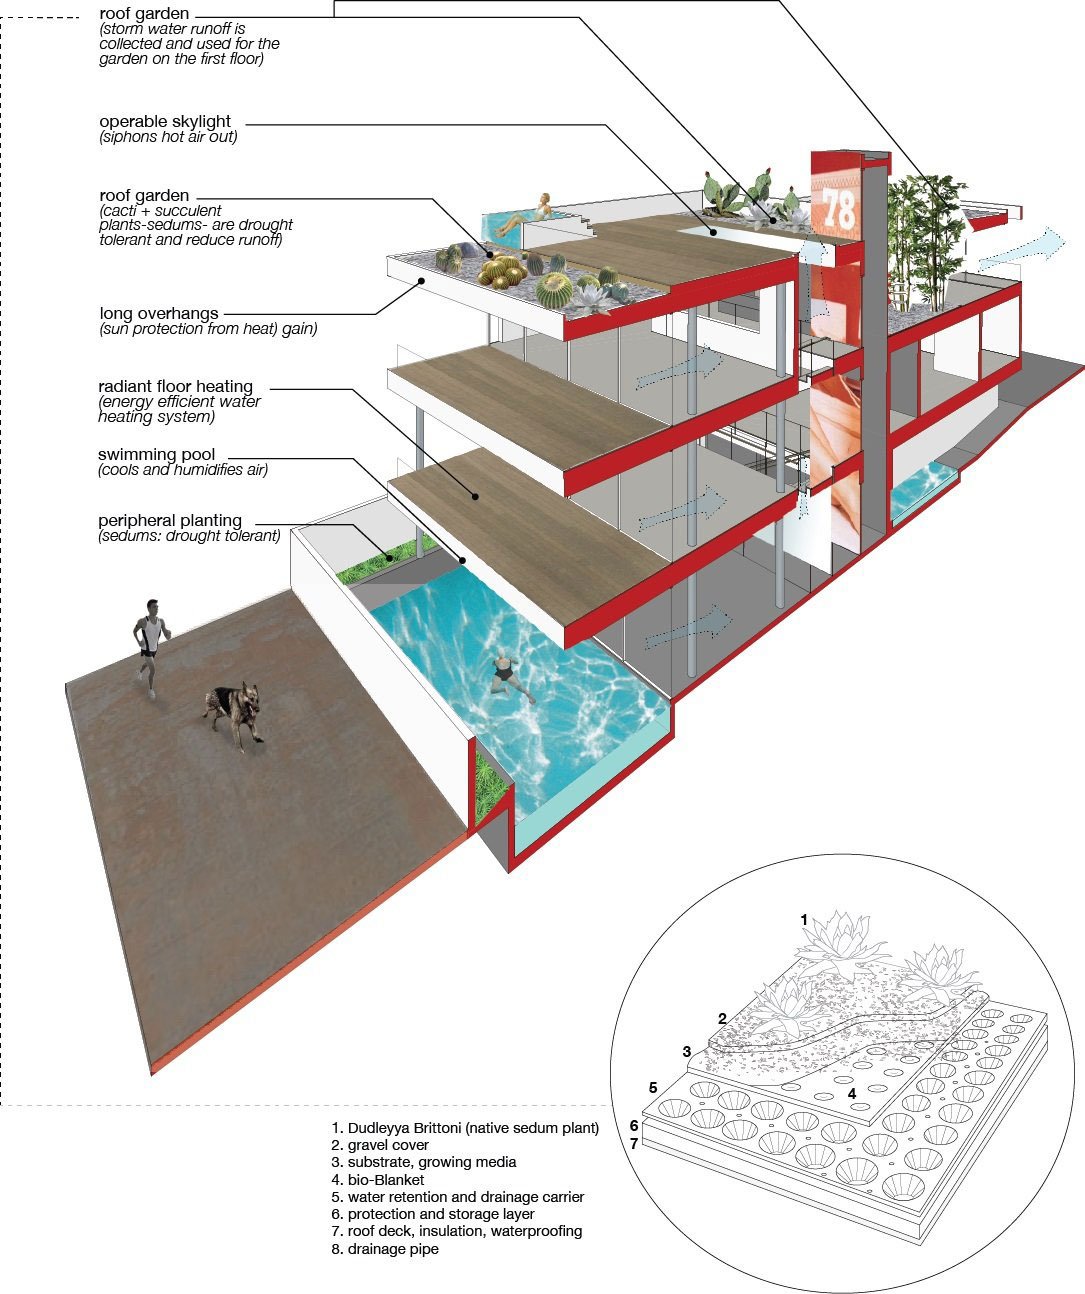 Дизайн частного дома Flip Flop от студии Dan Brunn